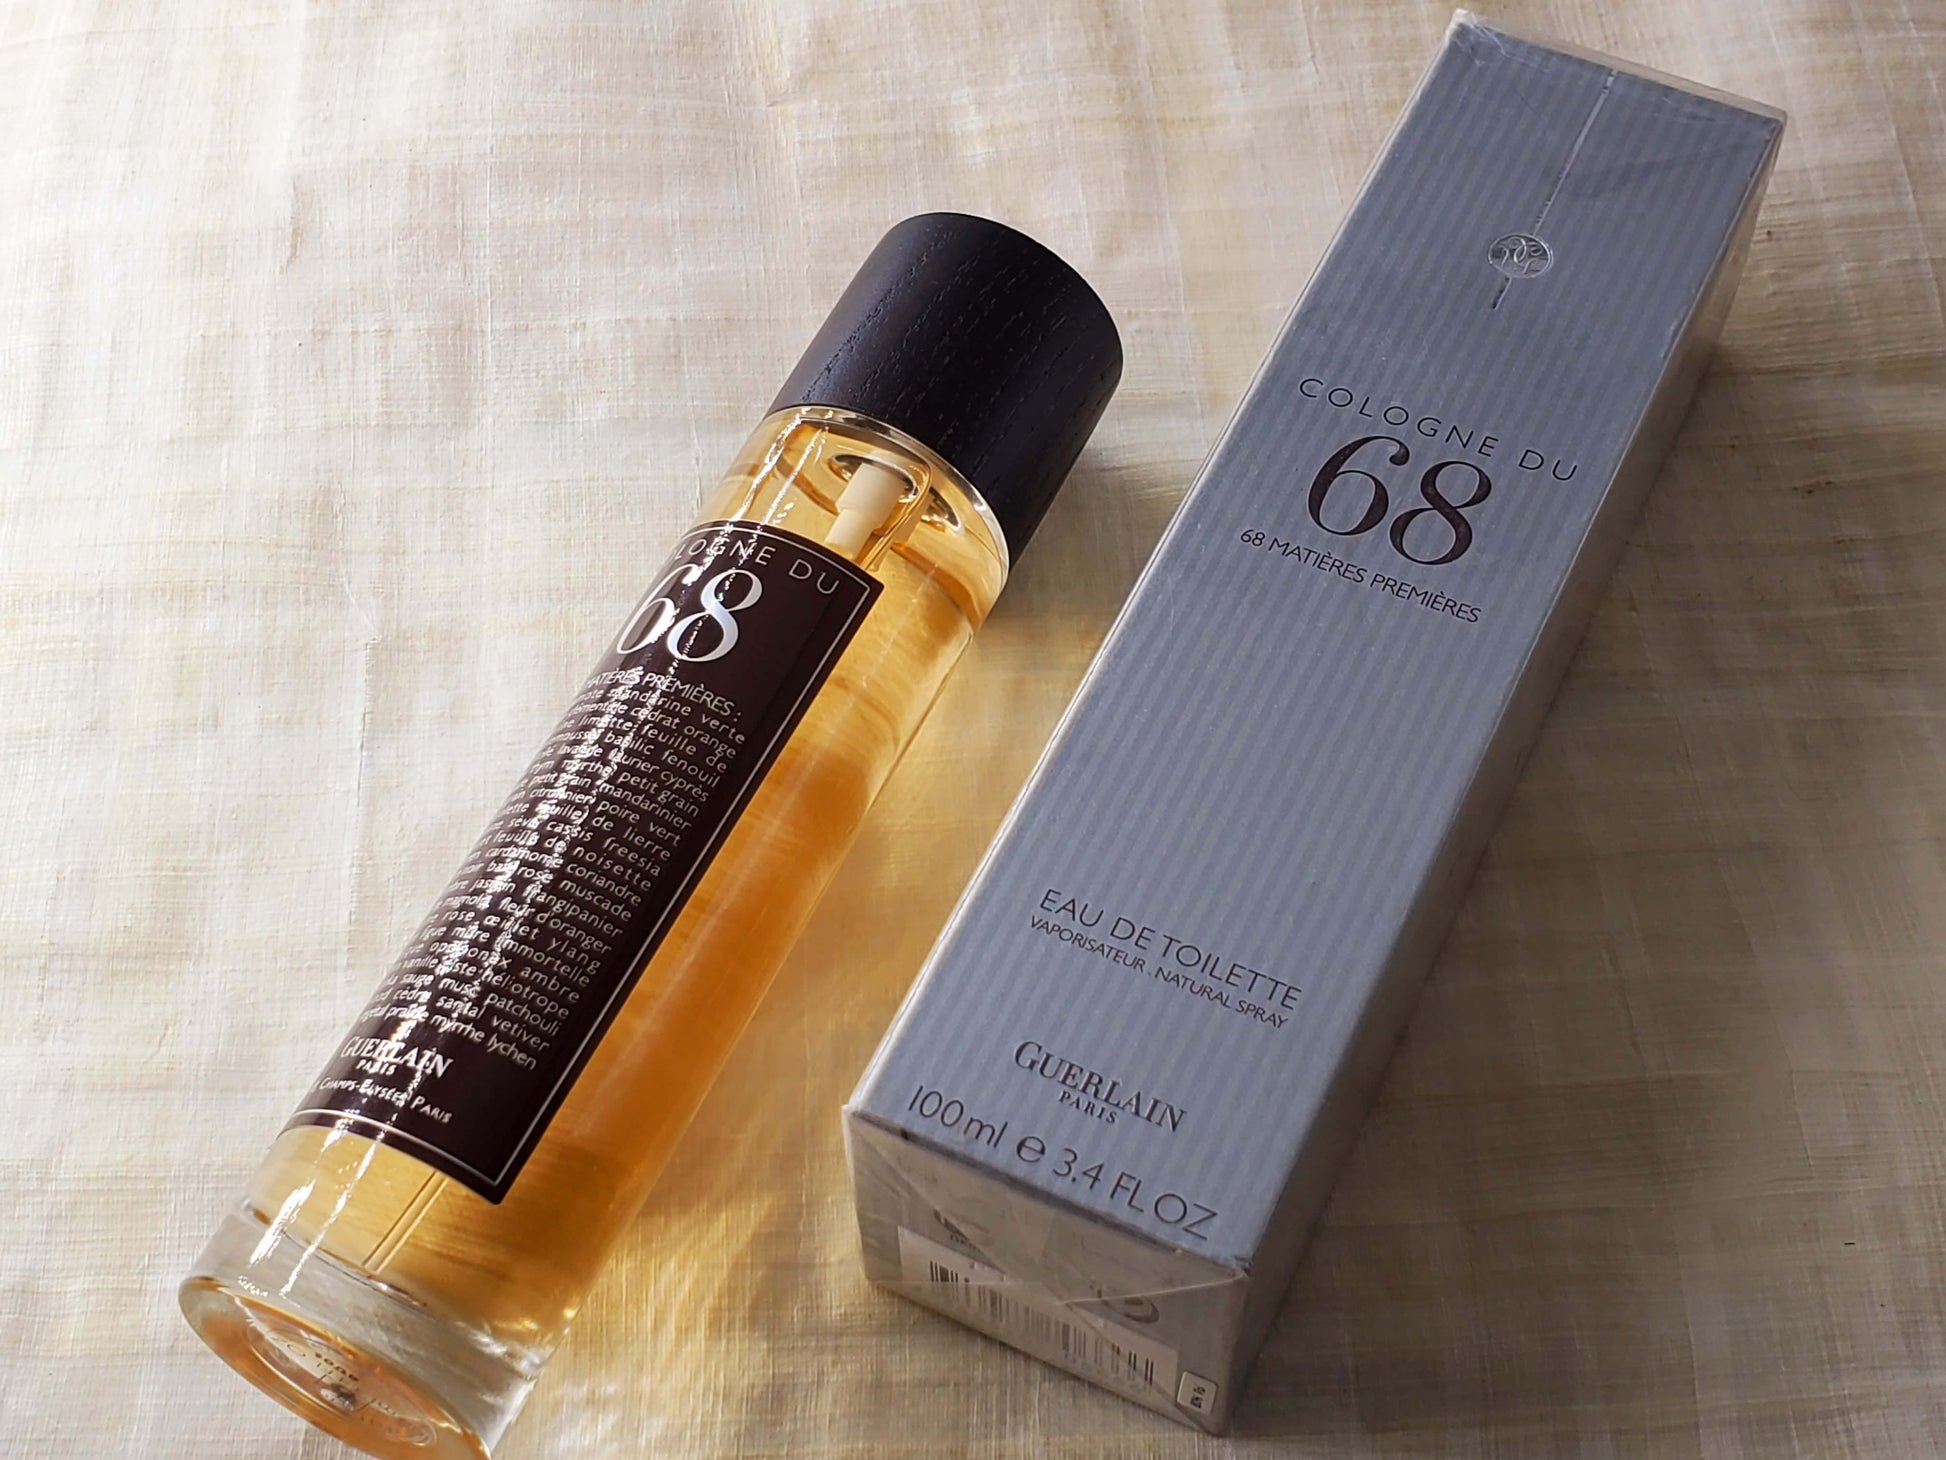  Set of 2 - Chance Eau Tendre for Women, Eau De Parfum Spray  0.05oz/1.5ml Vial Sampler : Beauty & Personal Care